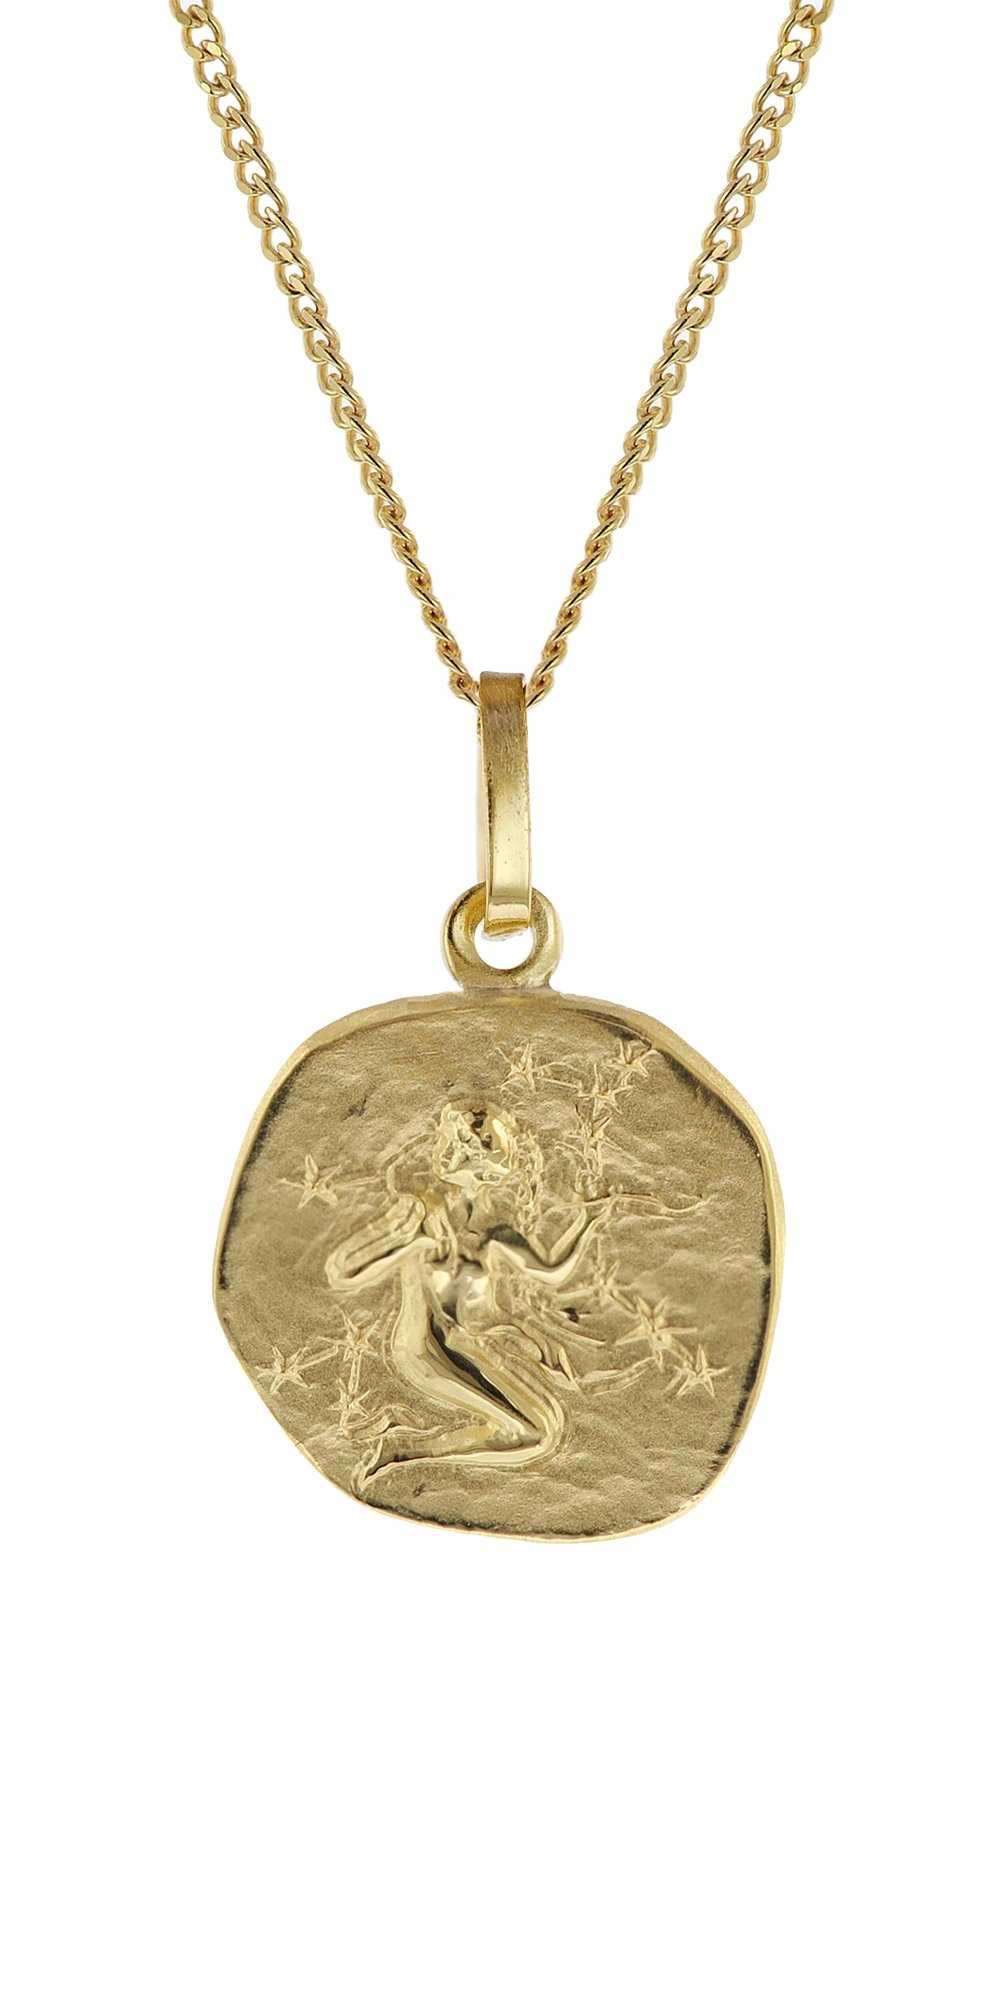 trendor 15022-09 Kinder-Halskette mit Sternzeichen Jungfrau 333/8K Gold